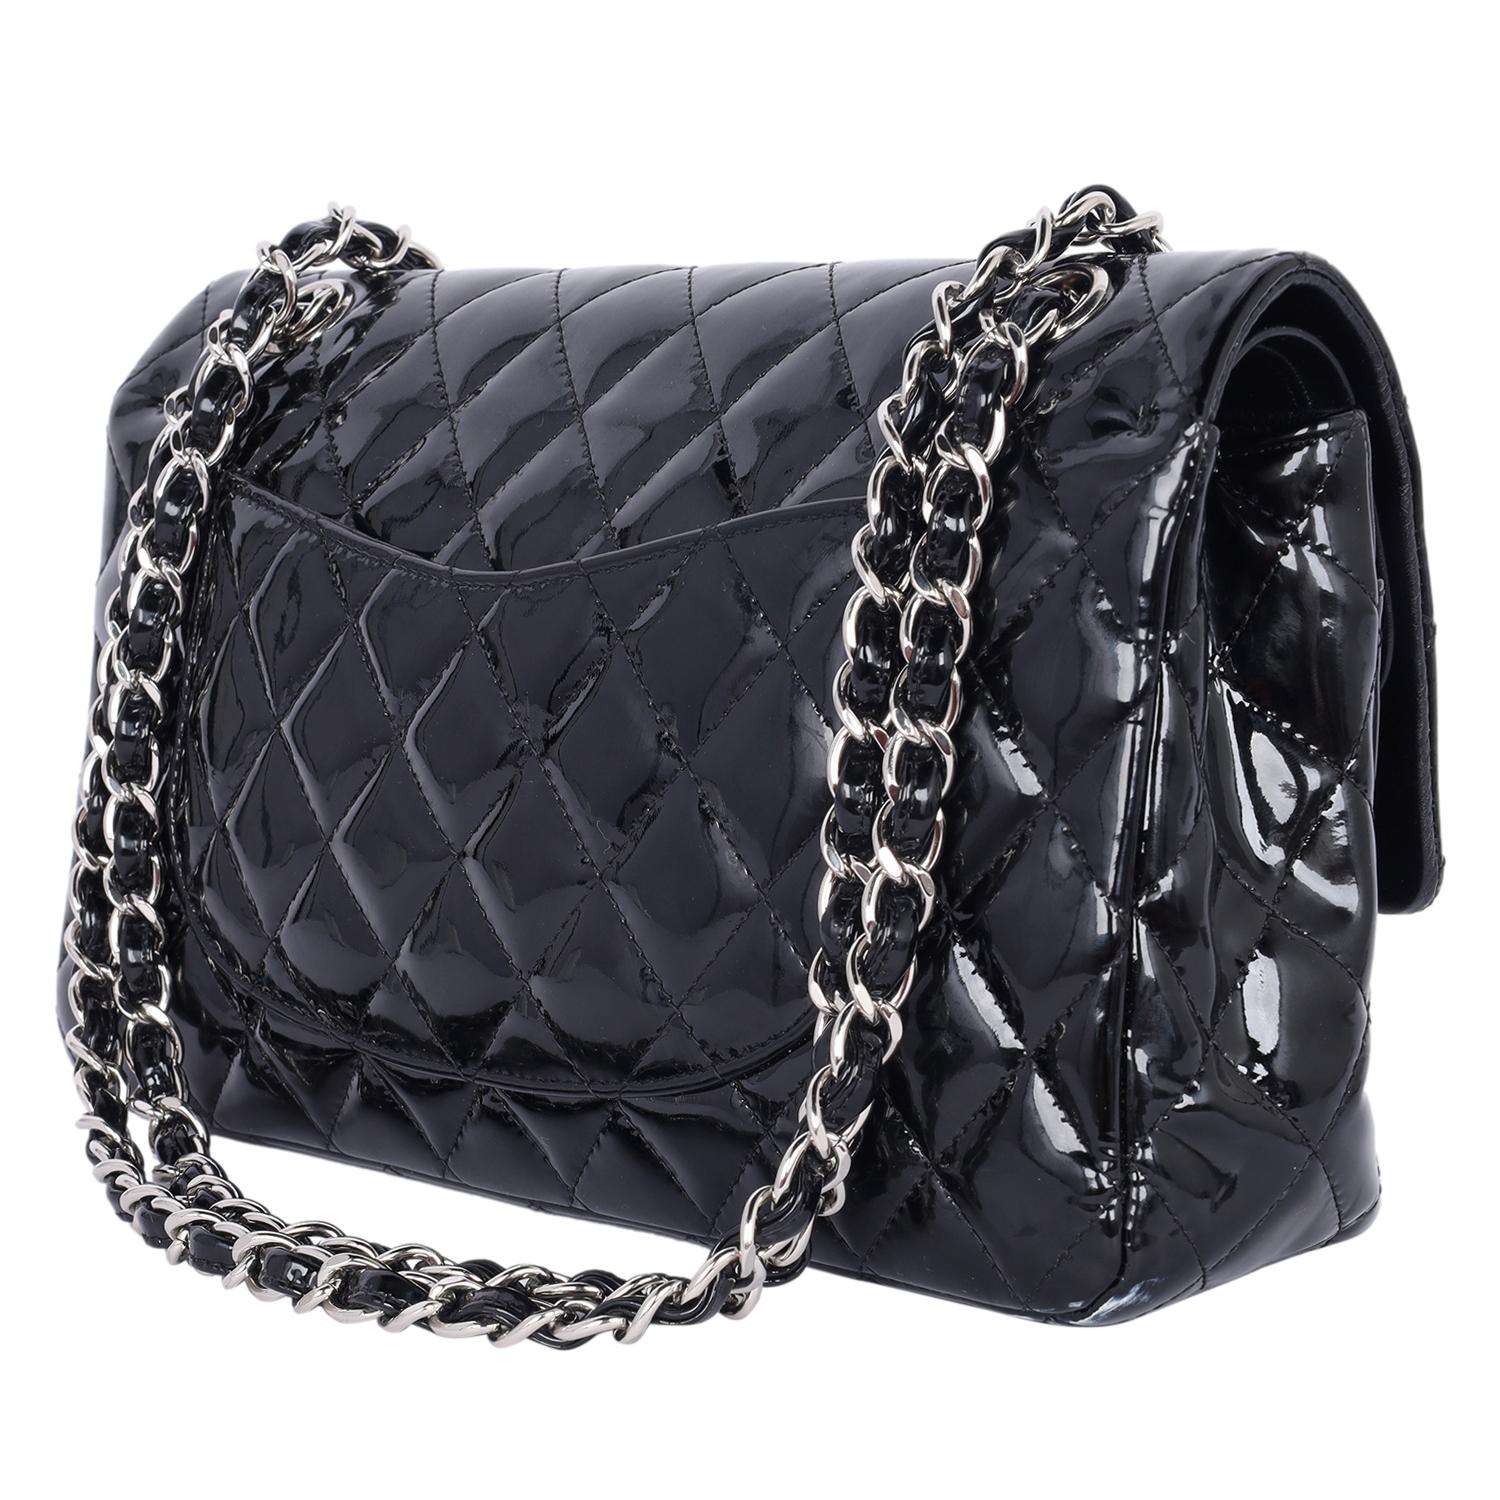 Chanel Double Flap Patent Leather Shoulder Bag Black 2